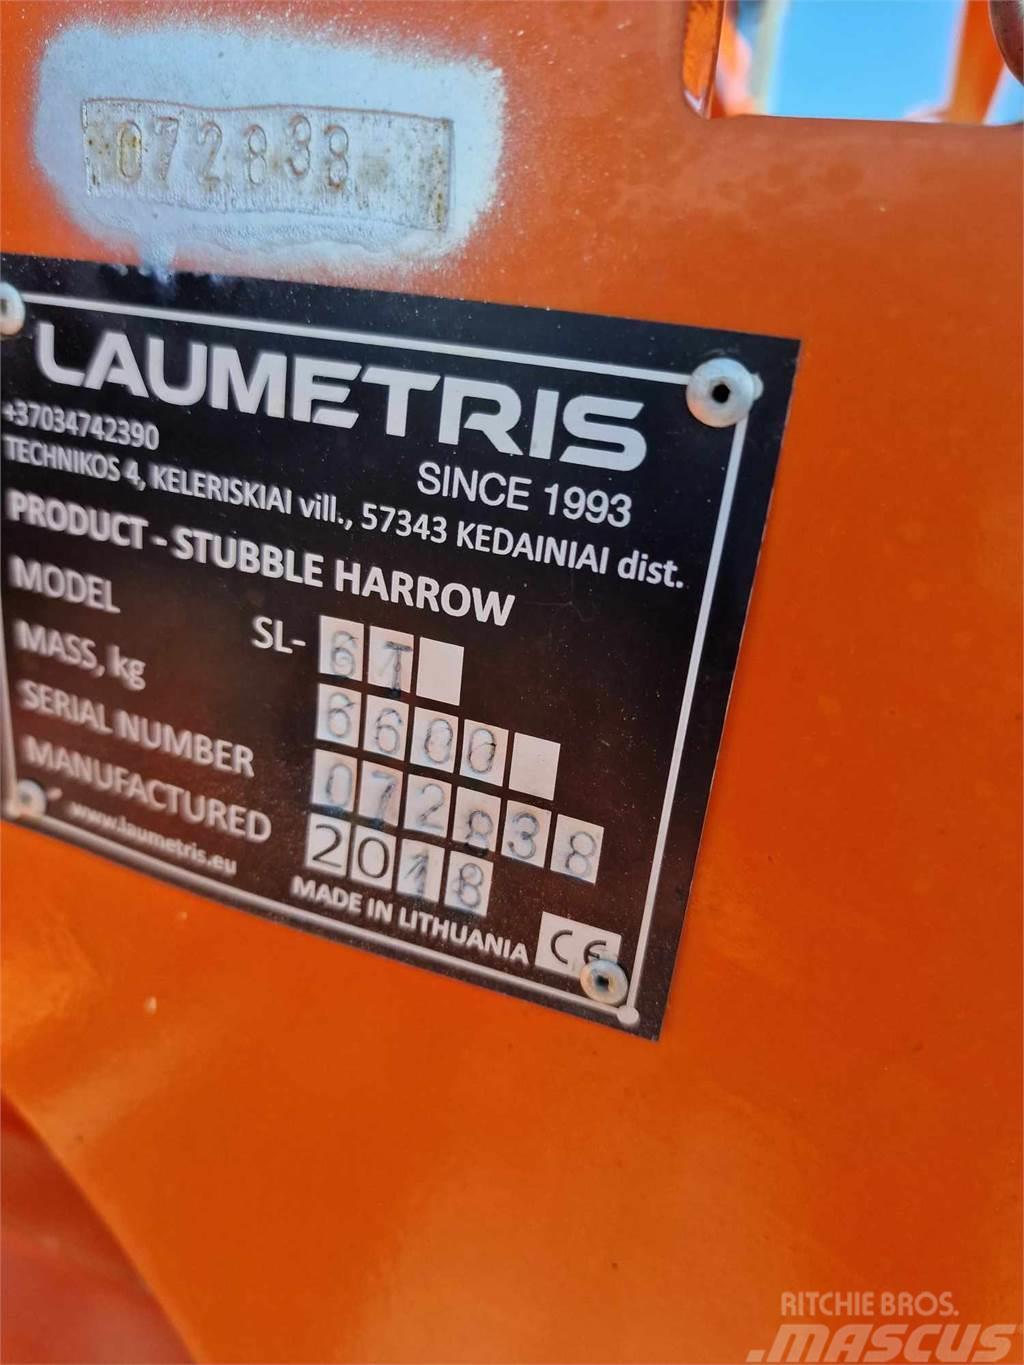  Laumetris SL 6T Skålharver